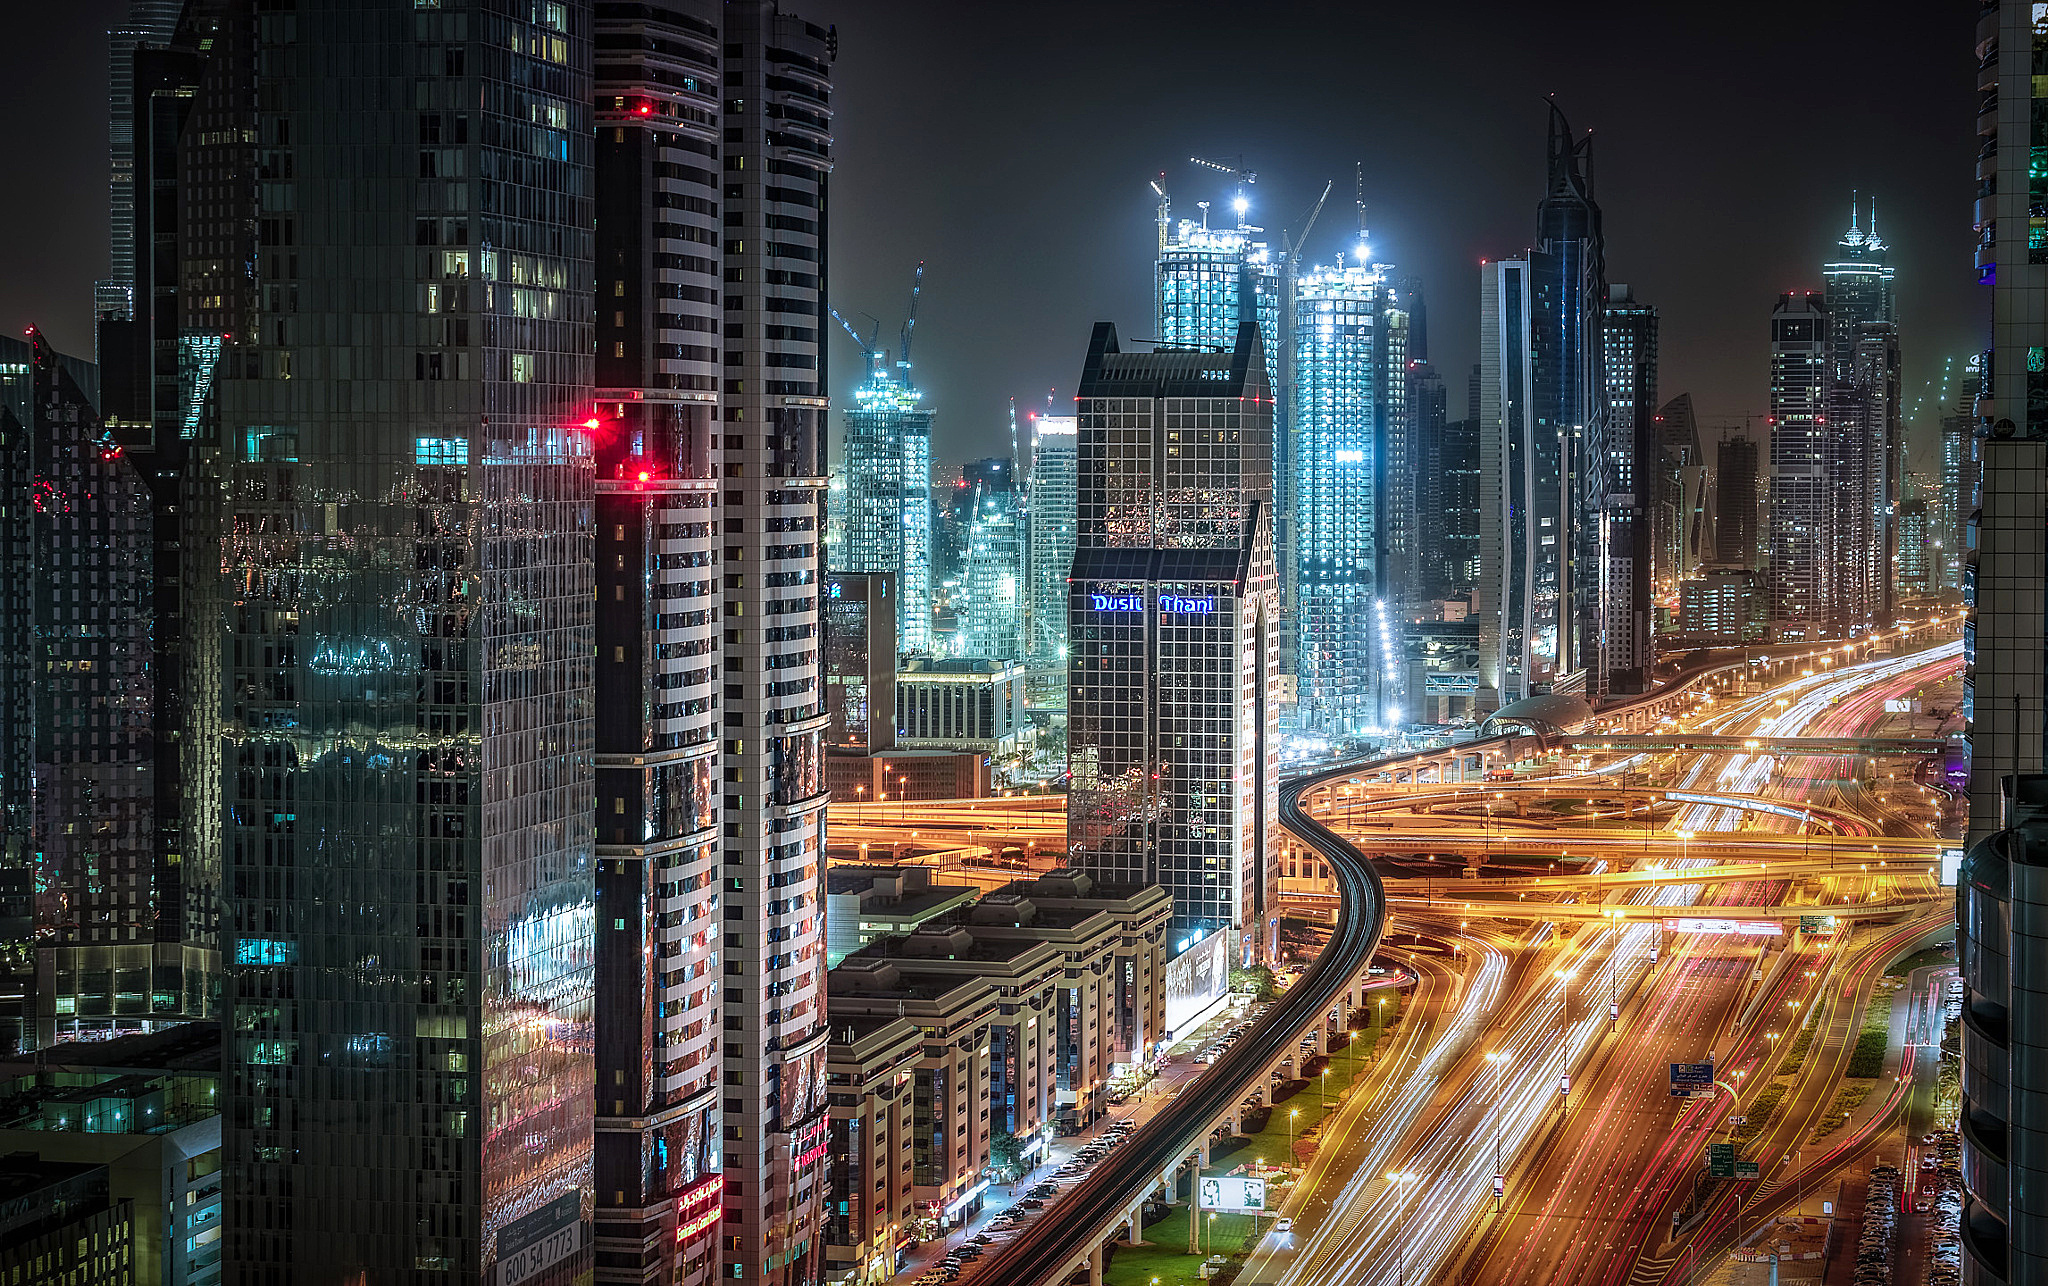 Мегаполис Дубай ночной